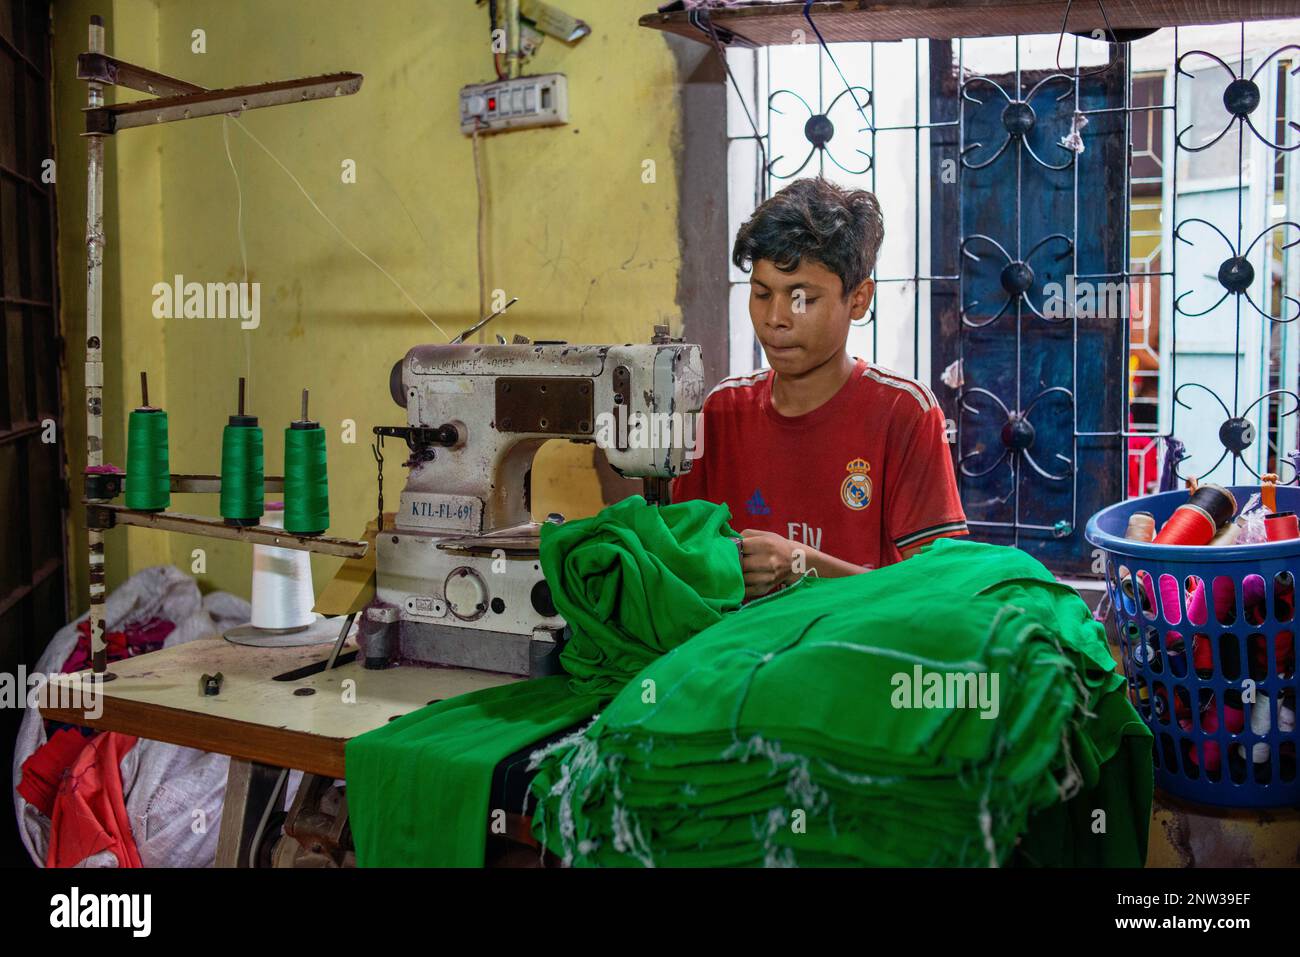 Un niño que trabaja en una fábrica local de ropa (RMG). El trabajo infantil  está restringido en los sectores de RMG, pero se ve a los niños trabajando  en muchas fábricas locales